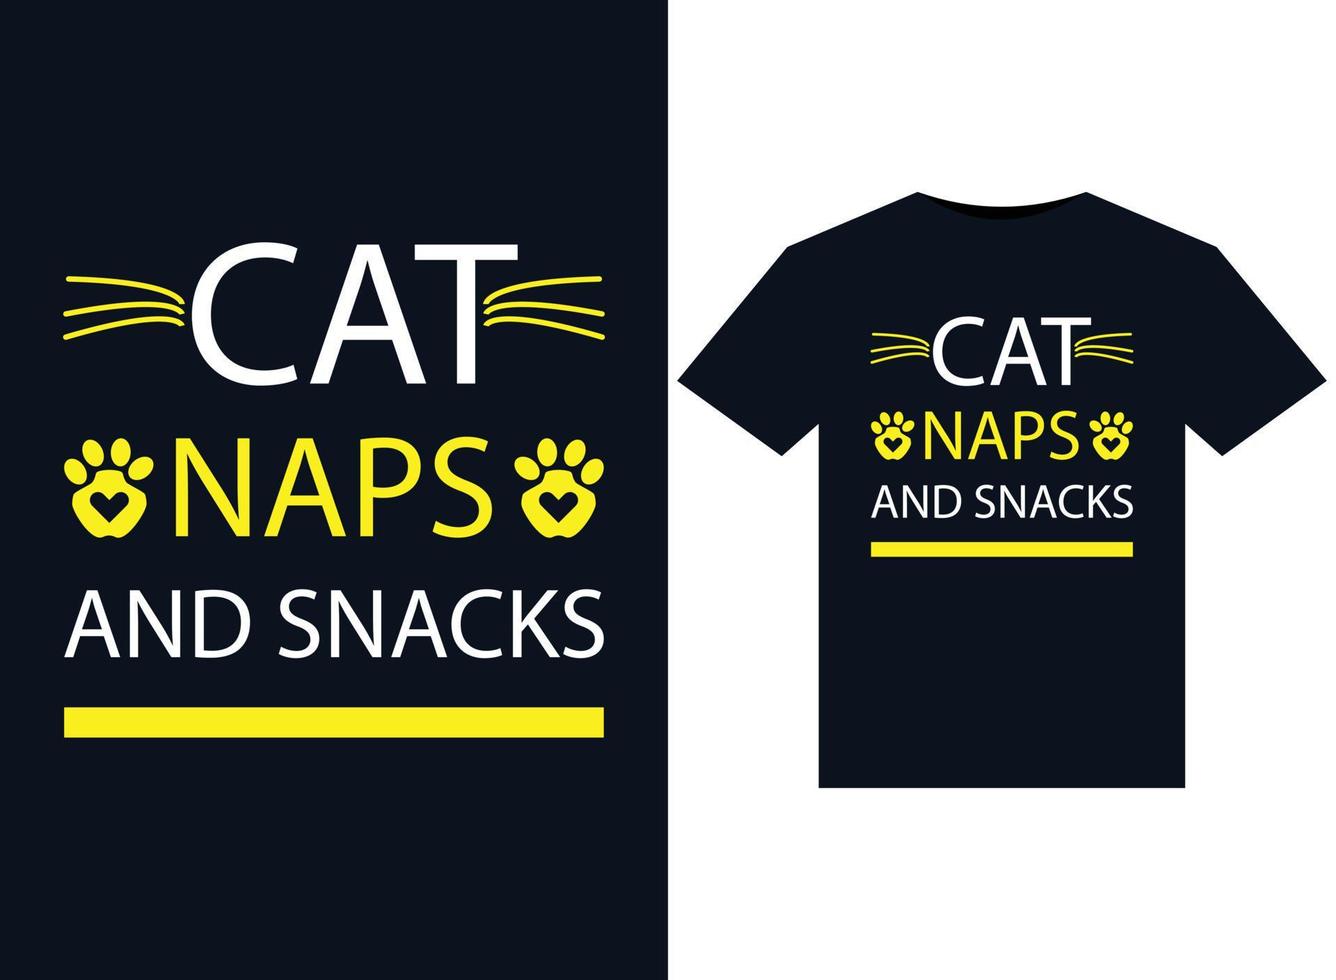 Katzen-, Nickerchen- und Snackillustrationen für druckfertiges T-Shirt-Design vektor